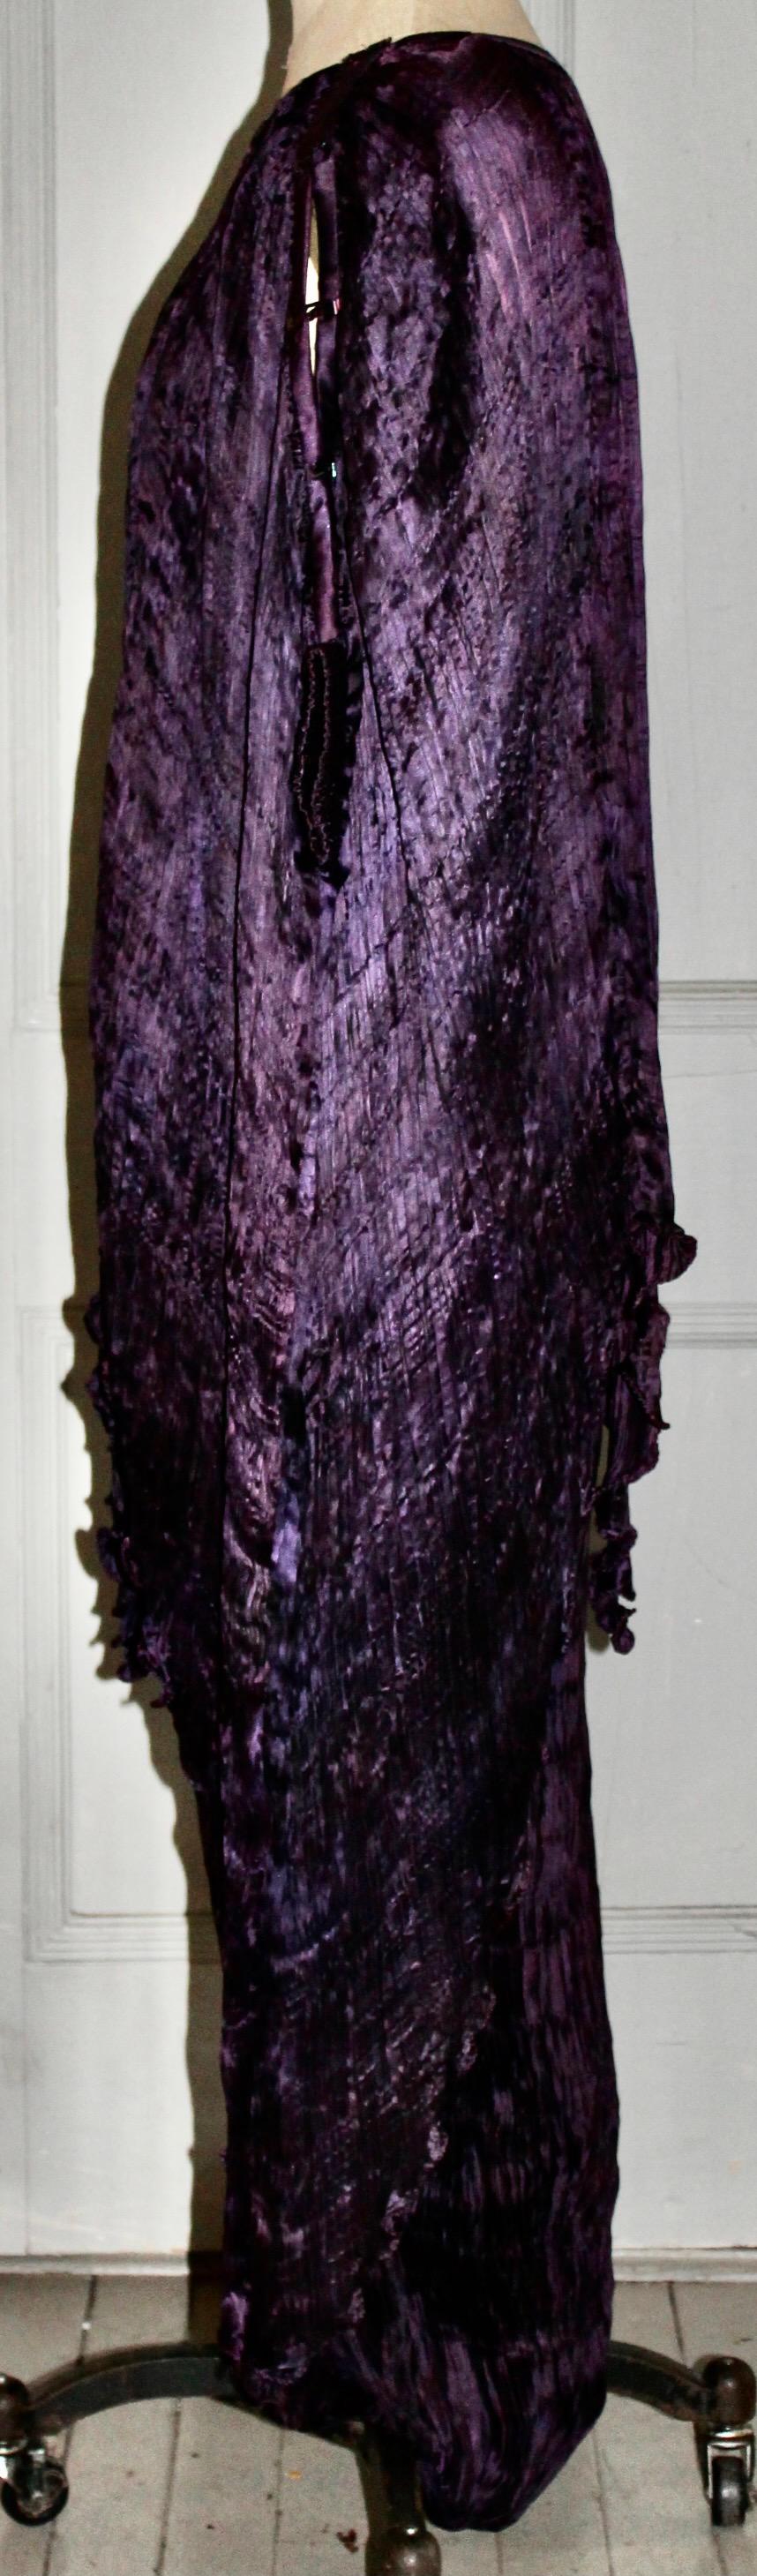 J'offre une jupe et un top plissés violets des années 1980 fabriqués à Abergavenny au Pays de Galles par Patricia Lester (Label).  Taille Eu 38-42 (taille élastique). Longueur de la jupe 42